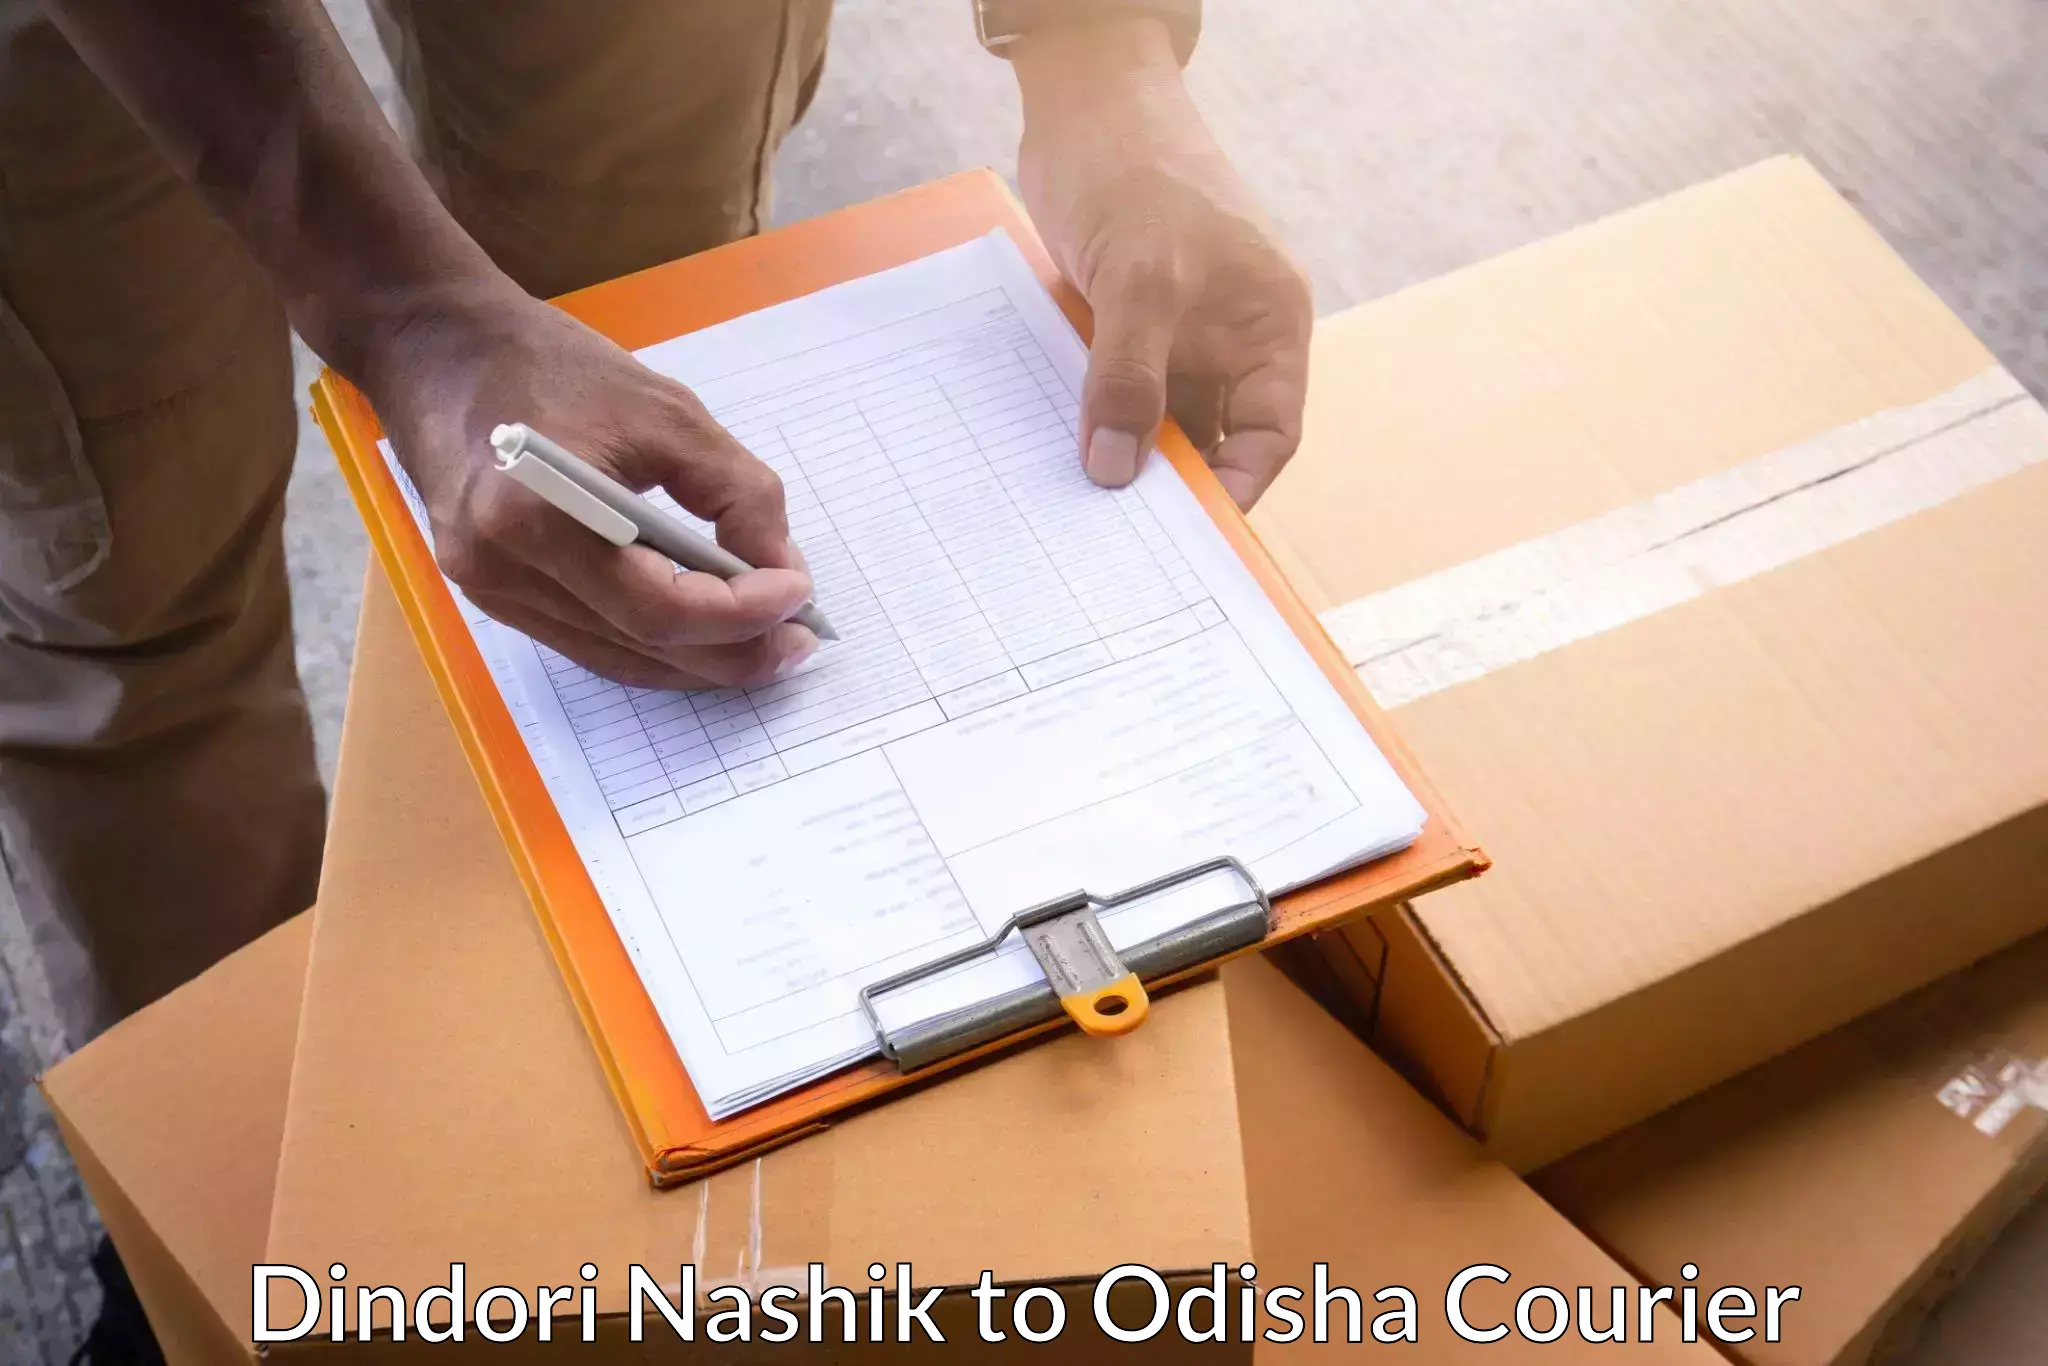 Next-day freight services Dindori Nashik to Keonjhar